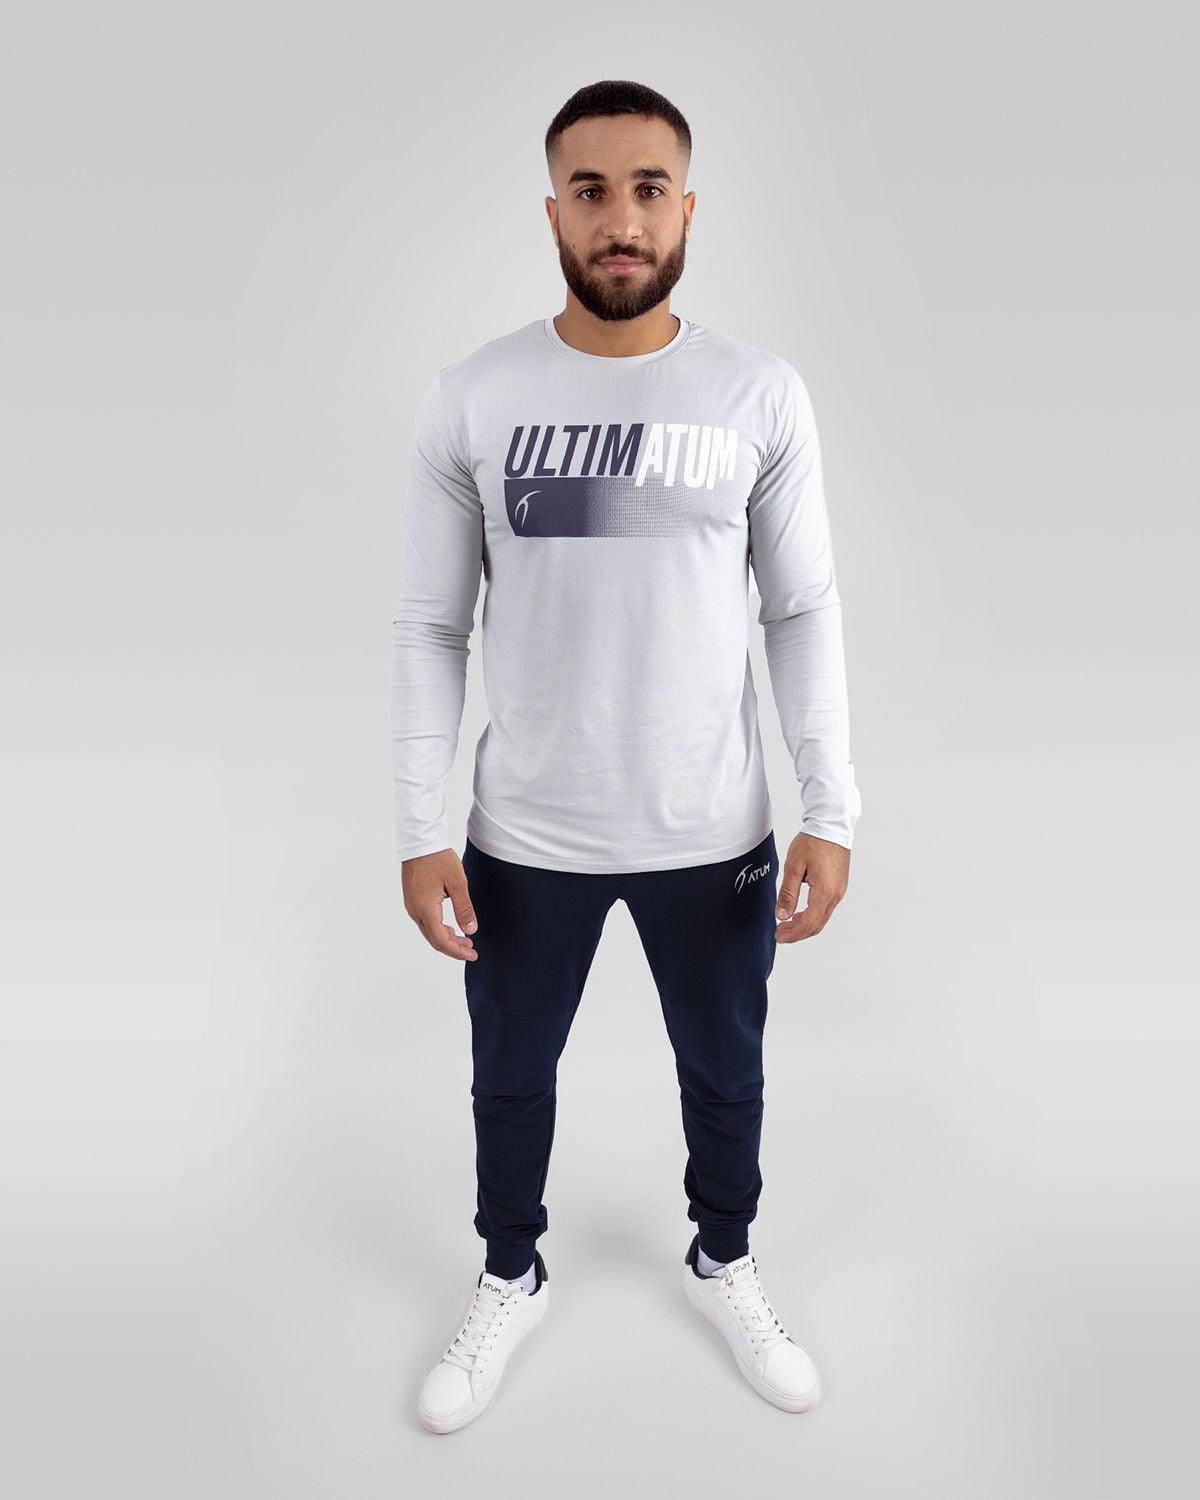 Atum Men's optimum t-shirt - Atum Egypt #